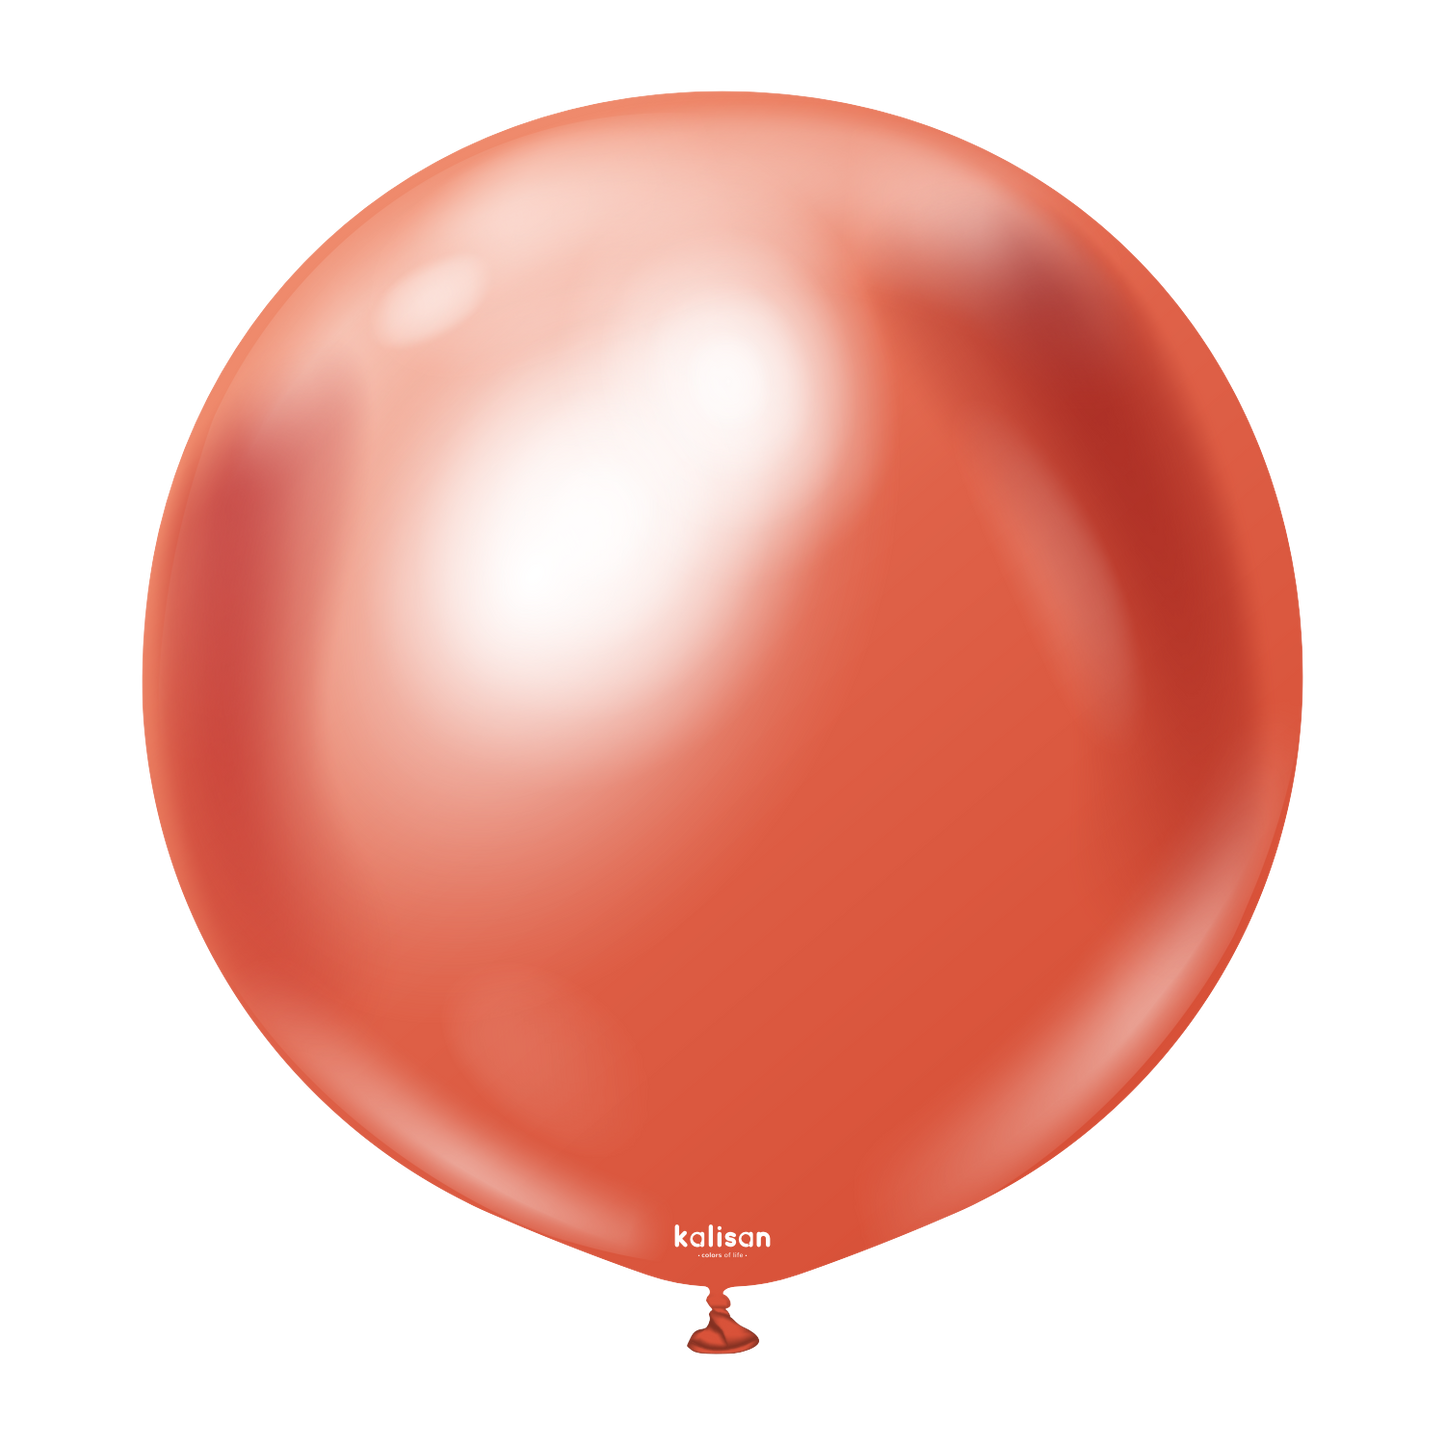 kalisan / BWS 36" Chrome Balloons